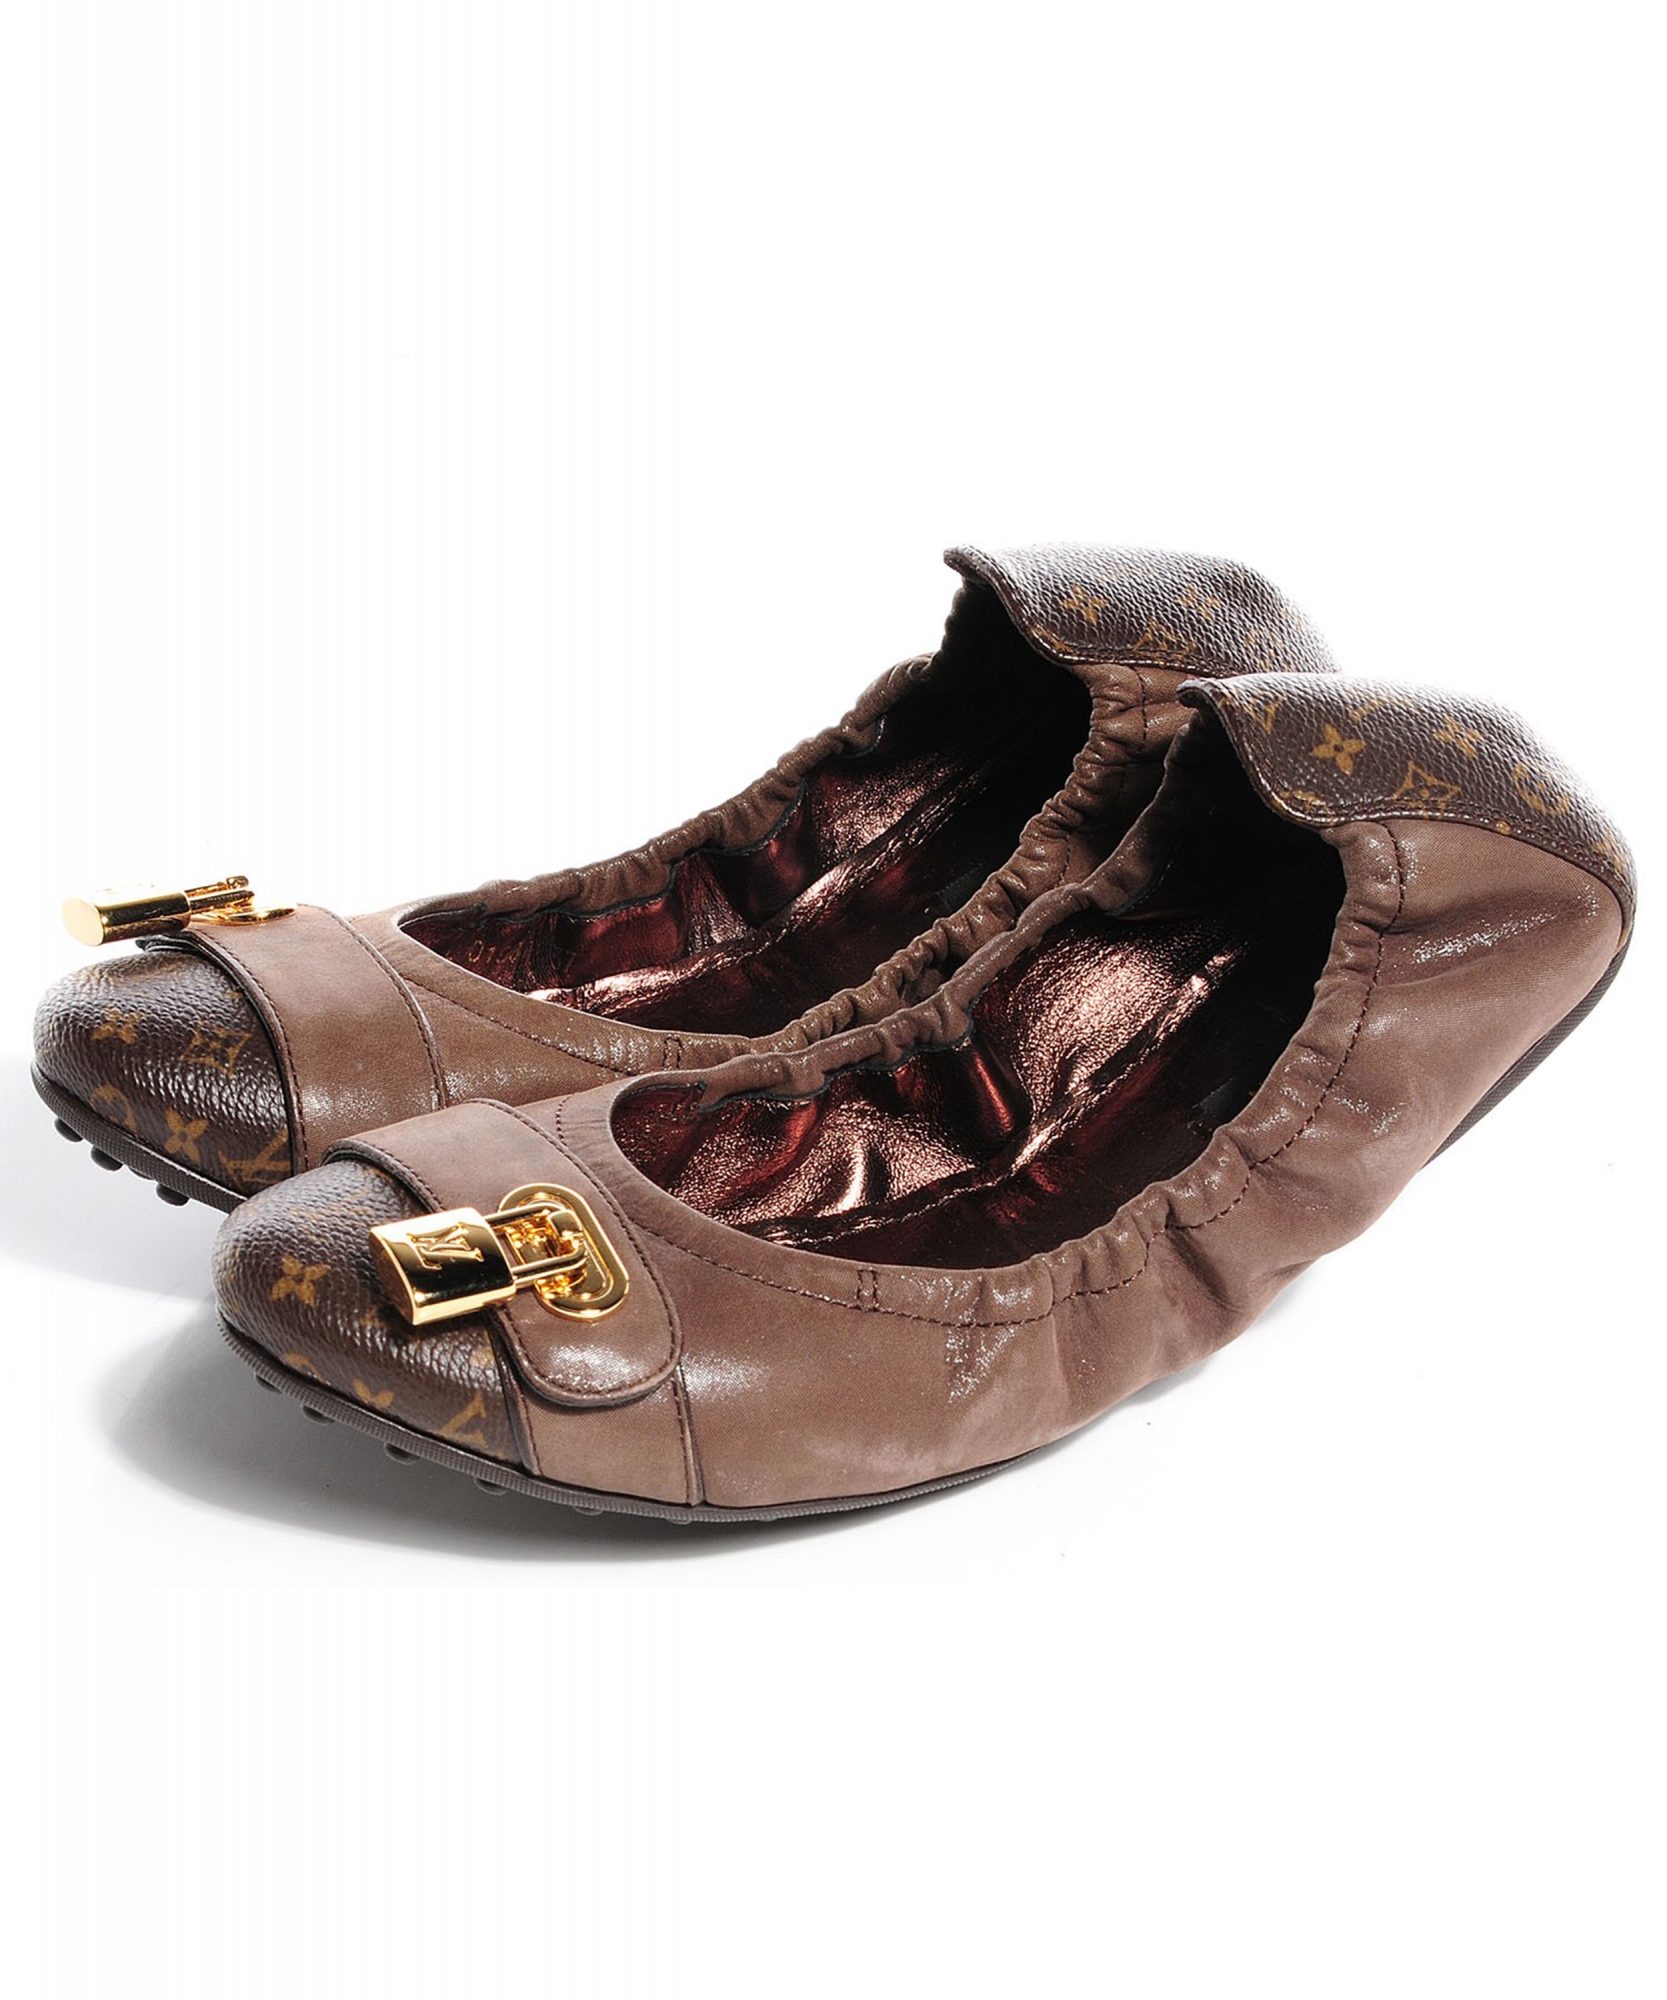 Louis Vuitton Womens Ballet Shoes, Multi, 34.5